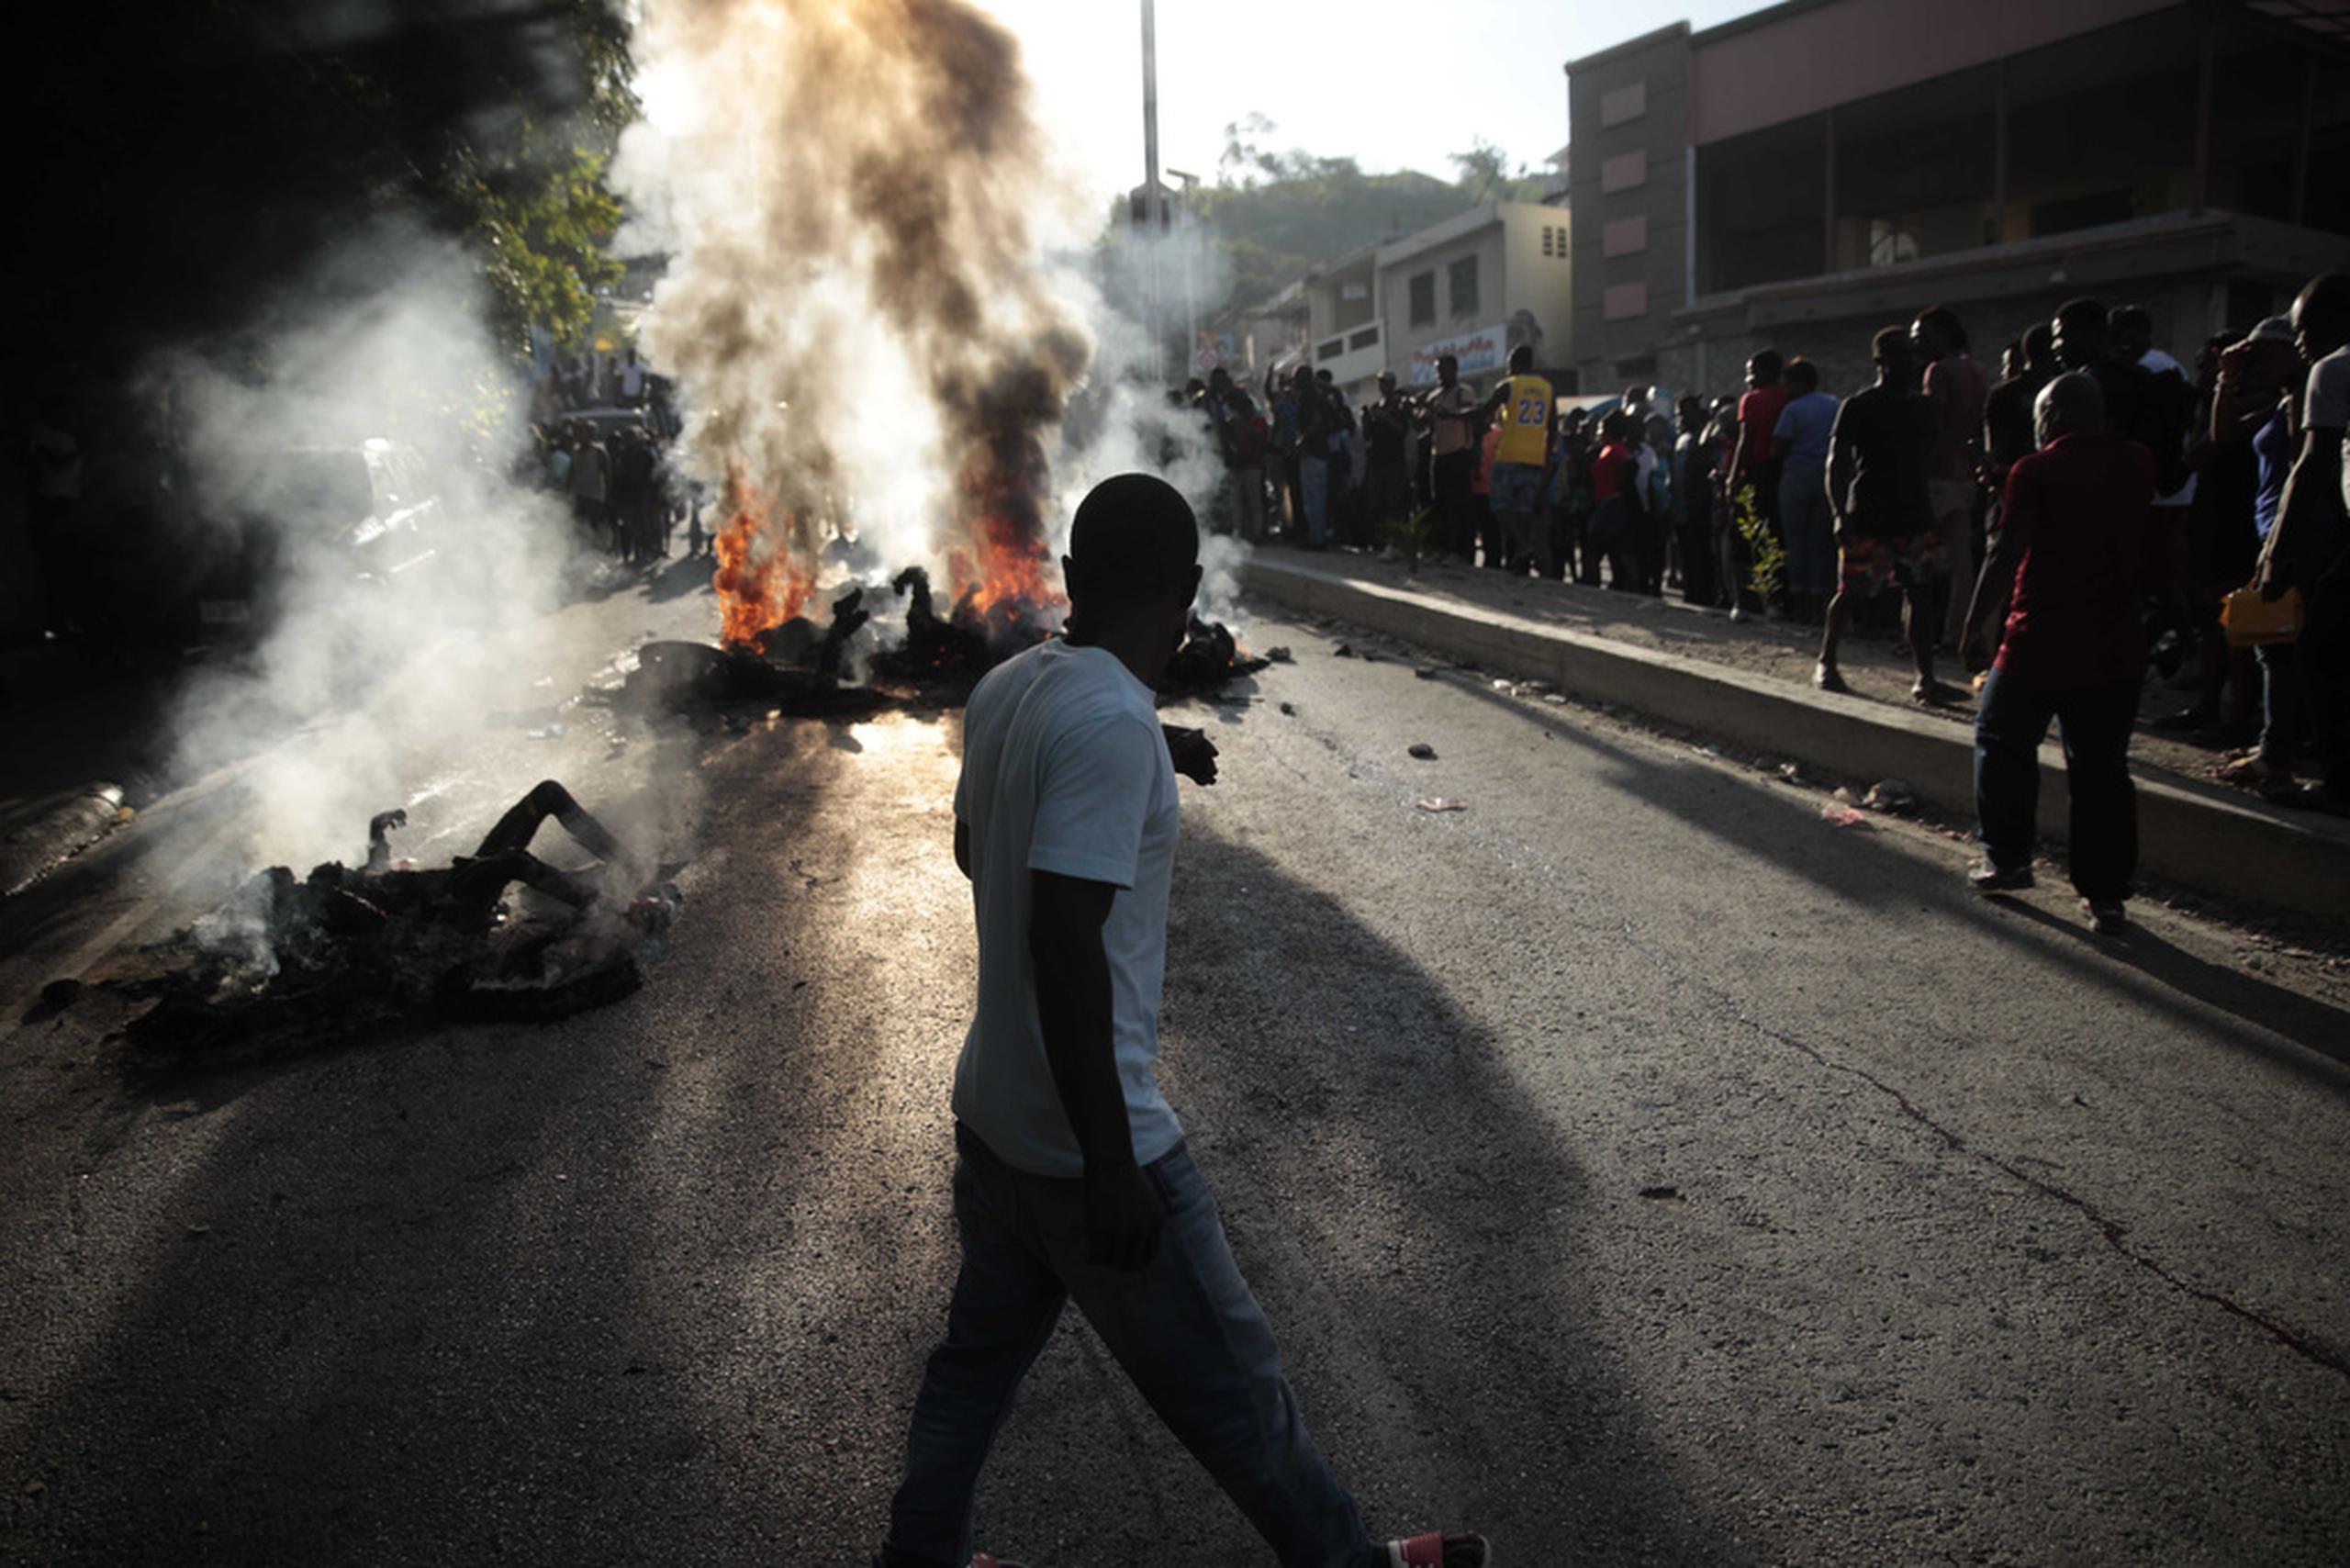 El año pasado se denunciaron unos 3,000 secuestros en Haití, según las estadísticas de la ONU.